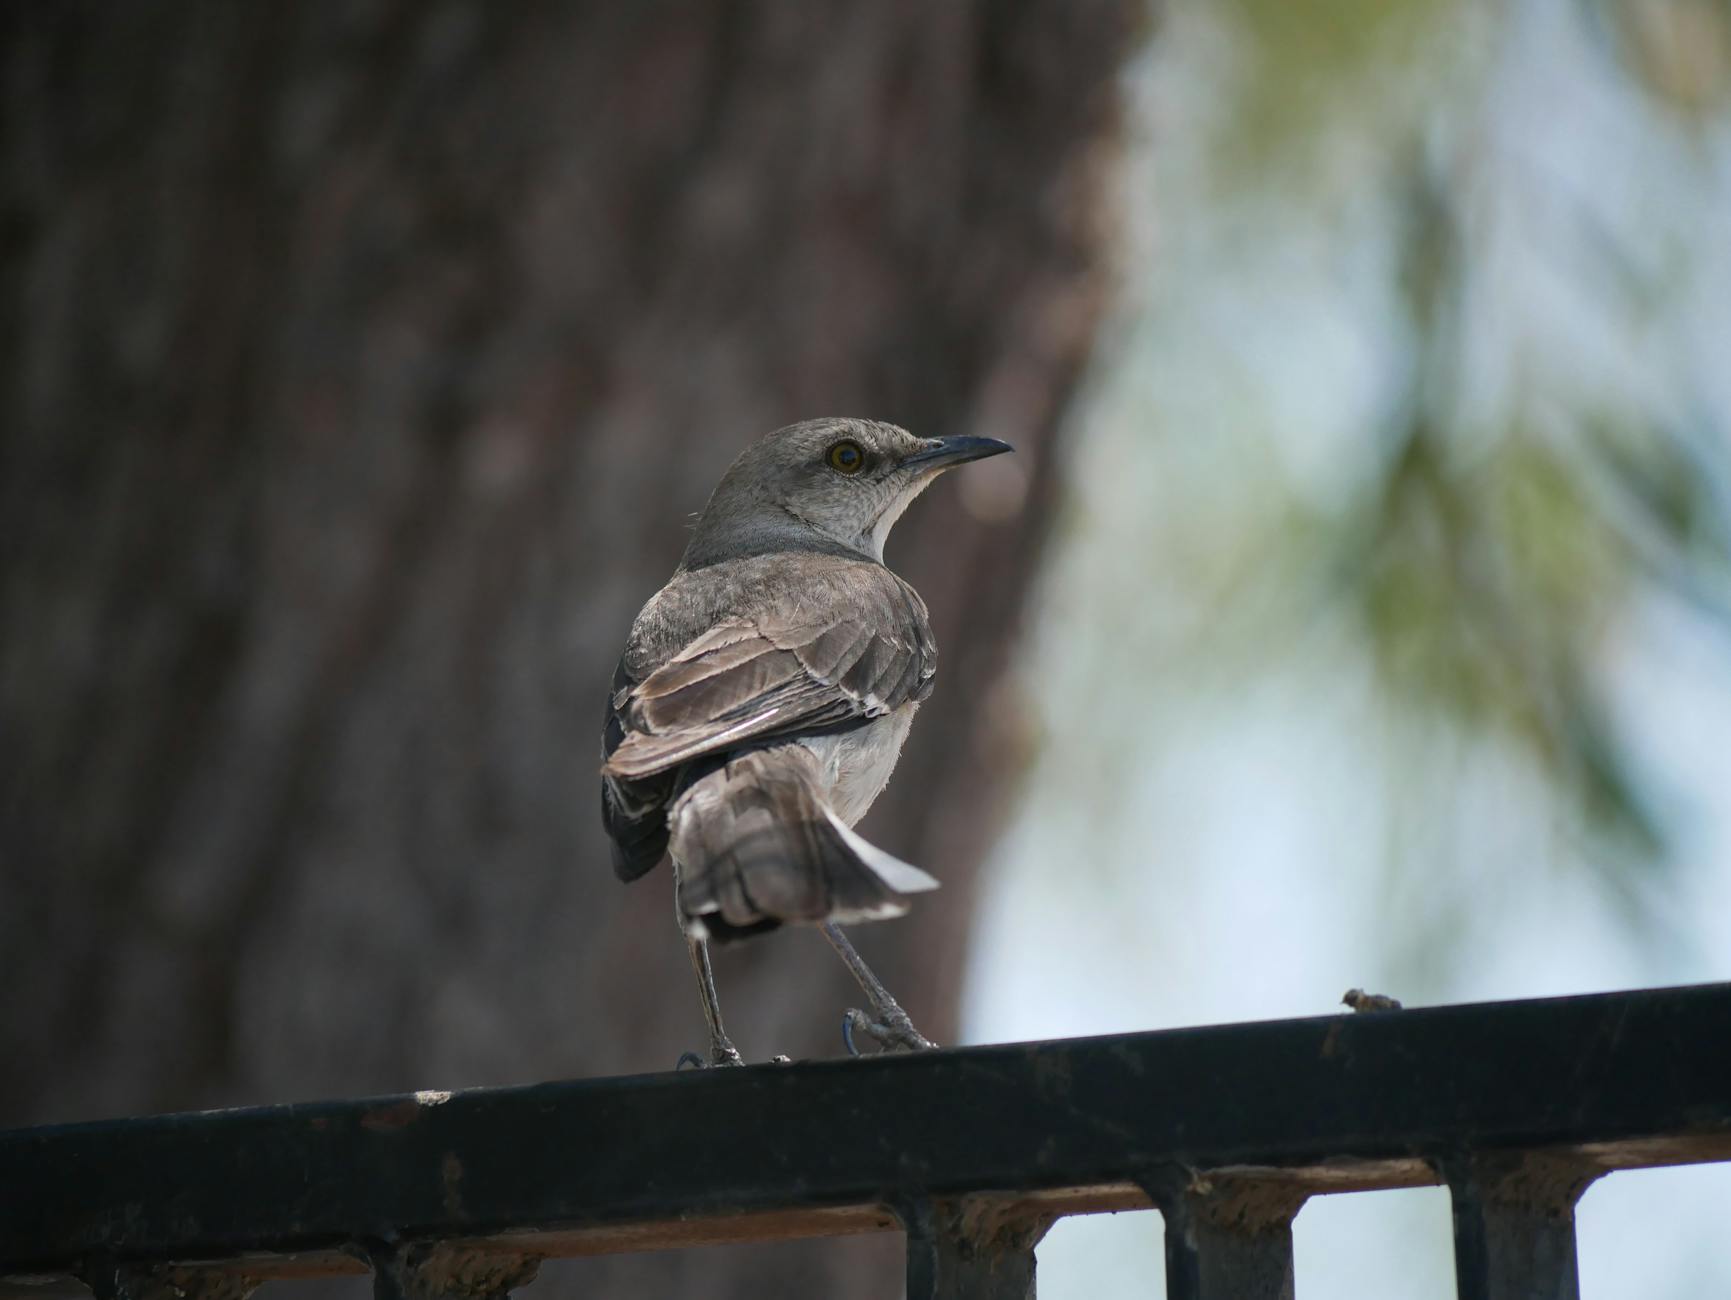 A mockingbird perched on a railing.